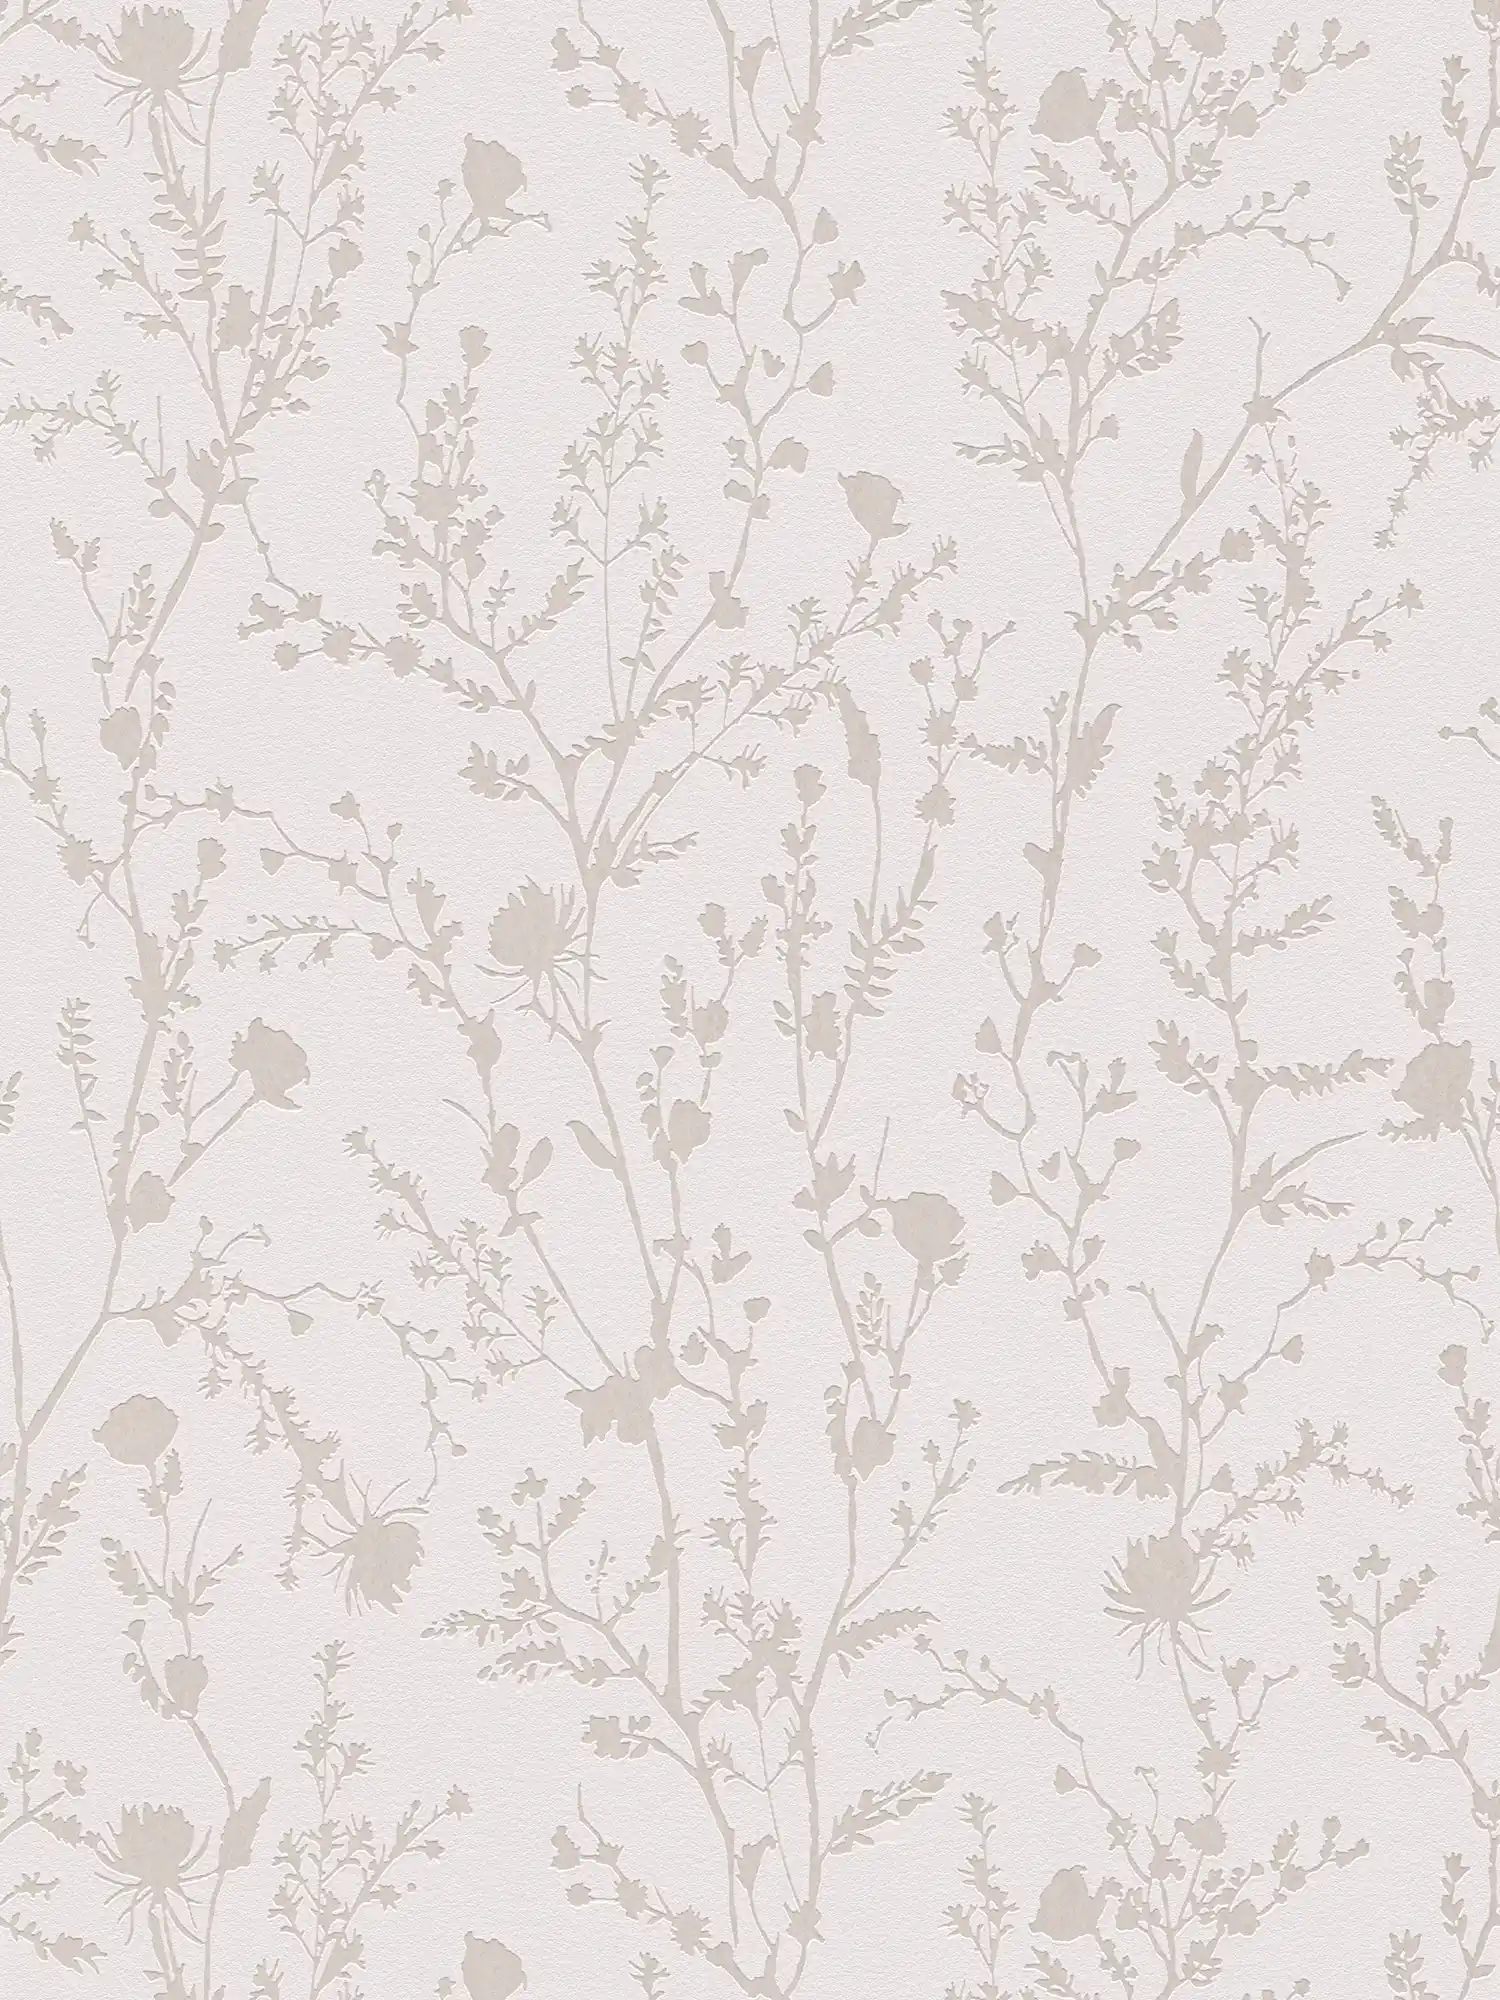 papier peint en papier intissé floral avec motif floral fantaisie - rose clair, gris clair
